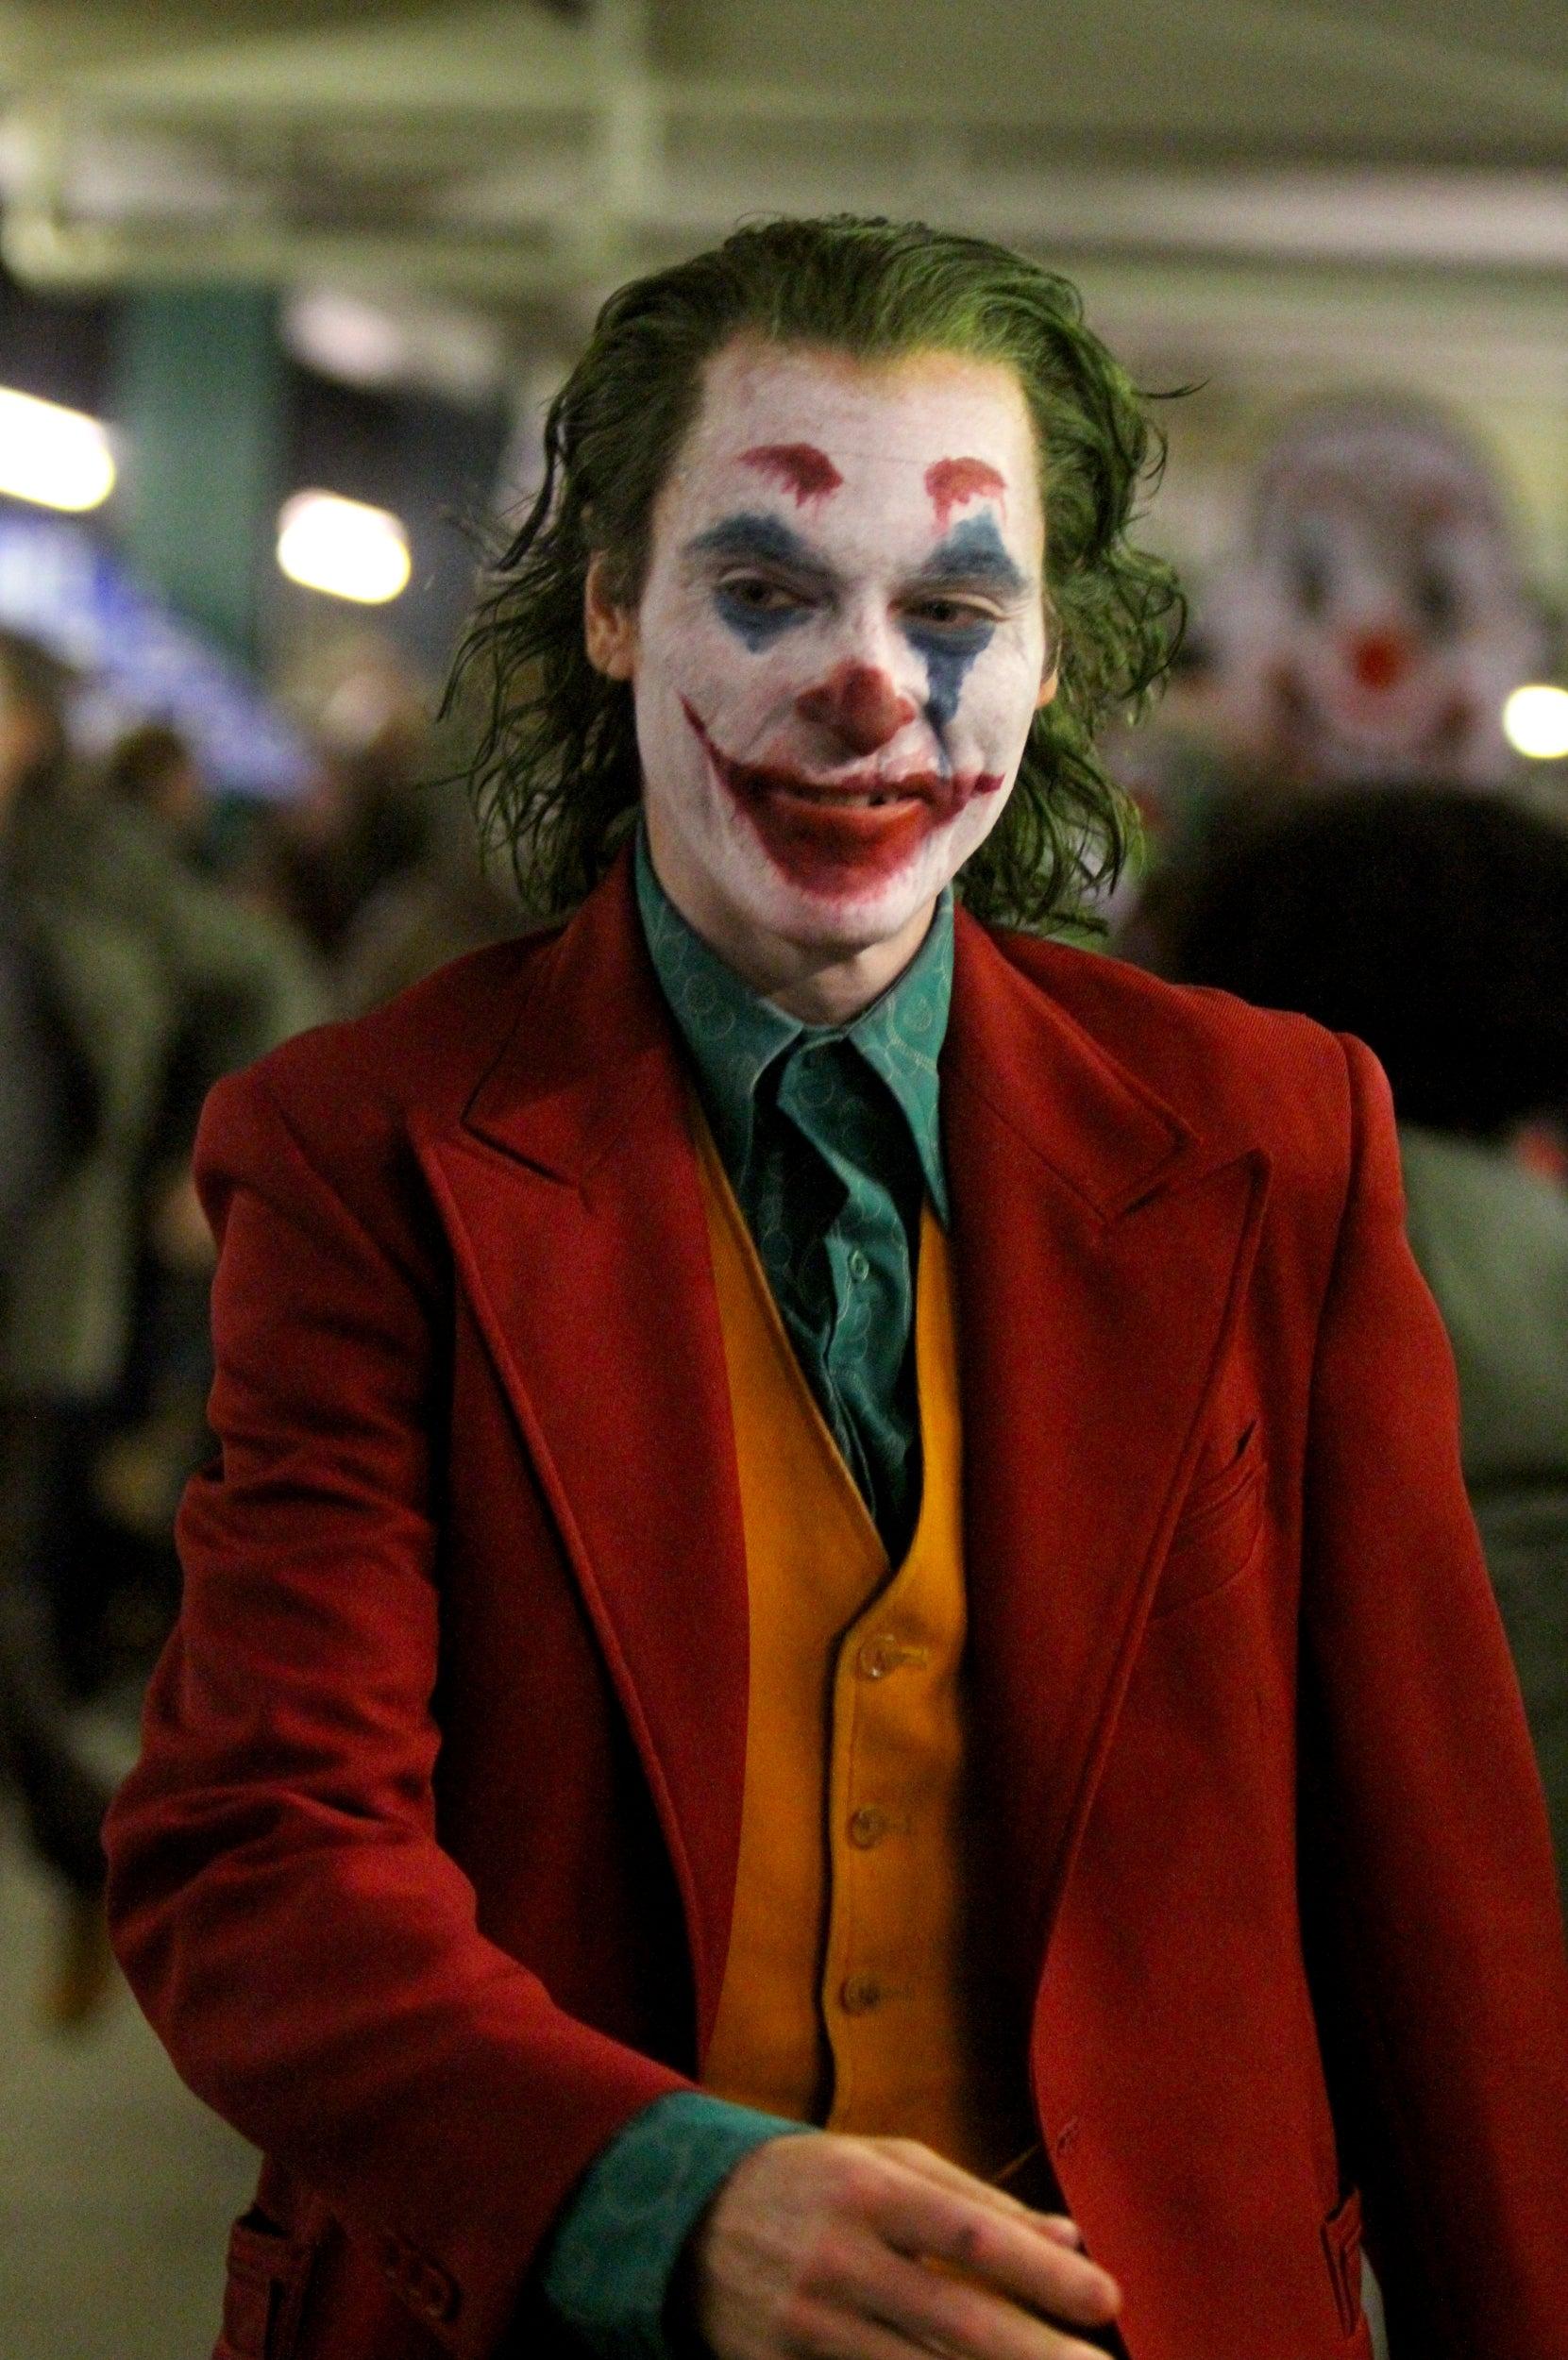 Joker trailer: First look reveals villain's tragic backstory as